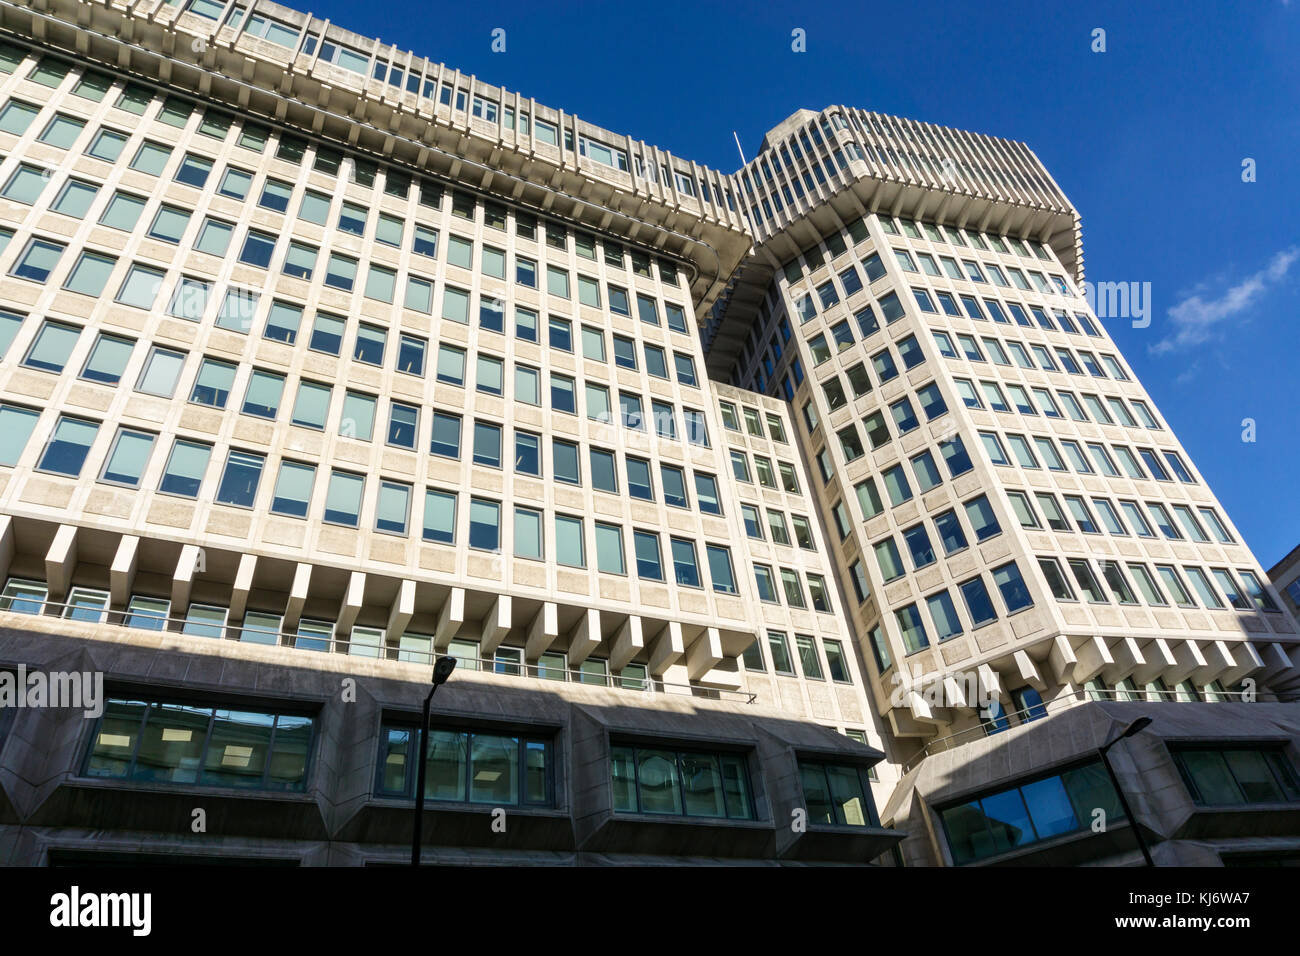 Ministère de la justice au 102 de la petite France à Londres a été le home office. Le bâtiment a été conçu par sir Basil Spence et achevé en 1976. Banque D'Images